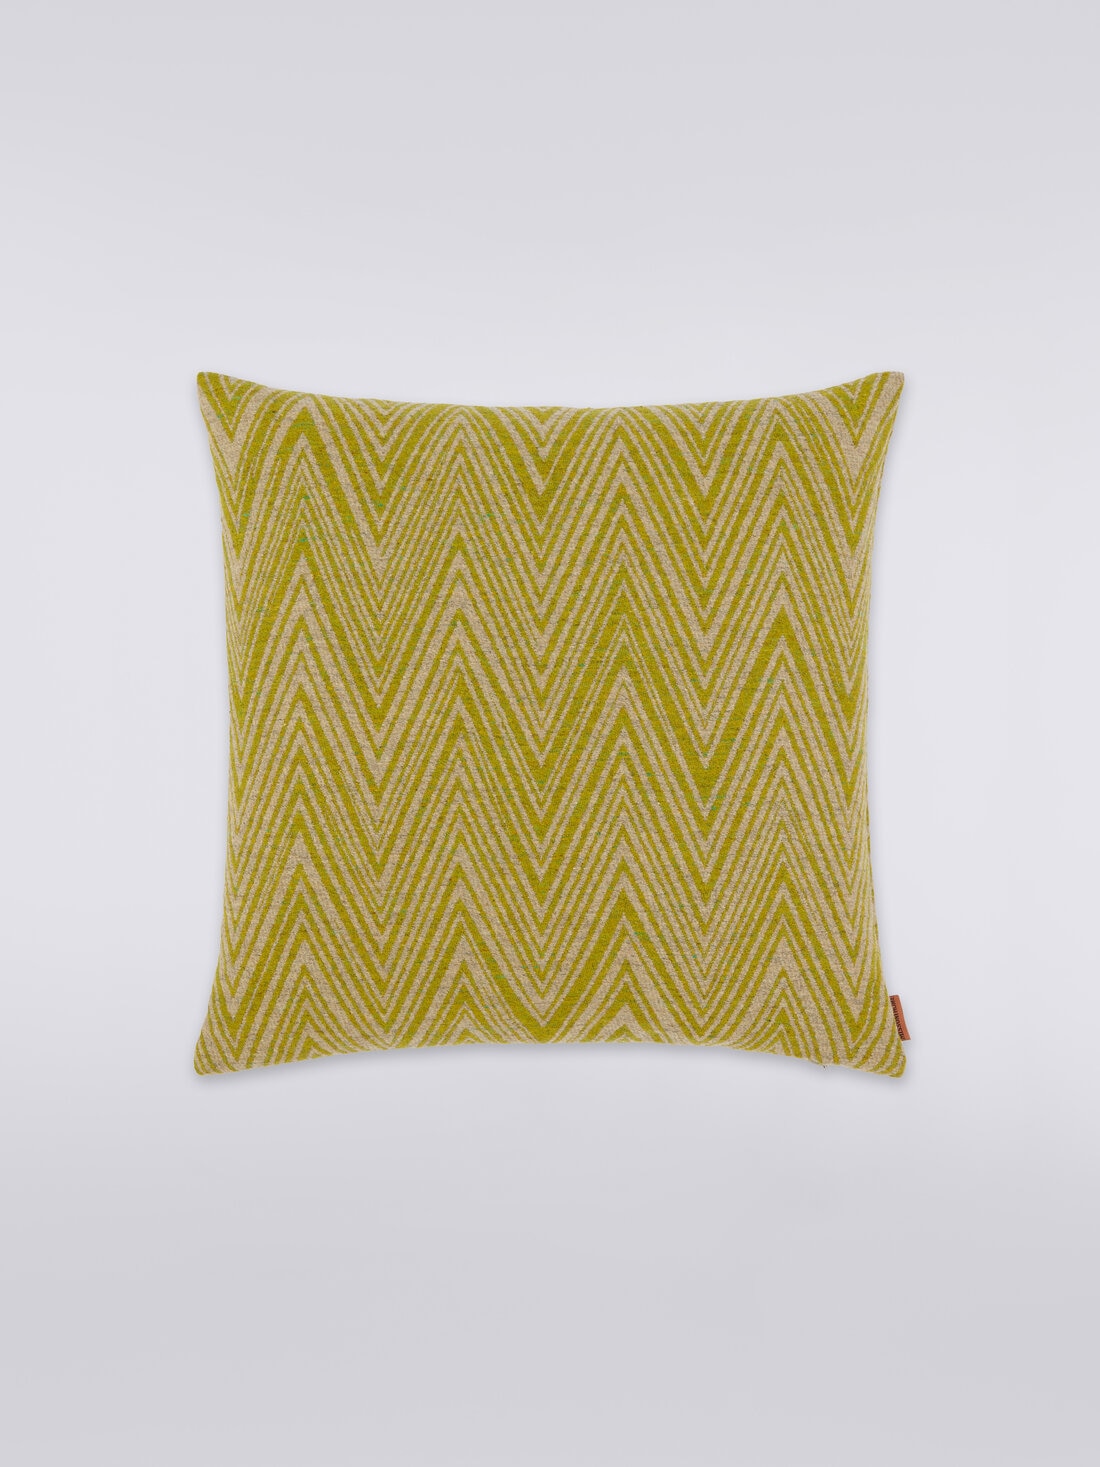 Bridgetown cushion 40x40 cm, Multicoloured  - 8051275581741 - 0